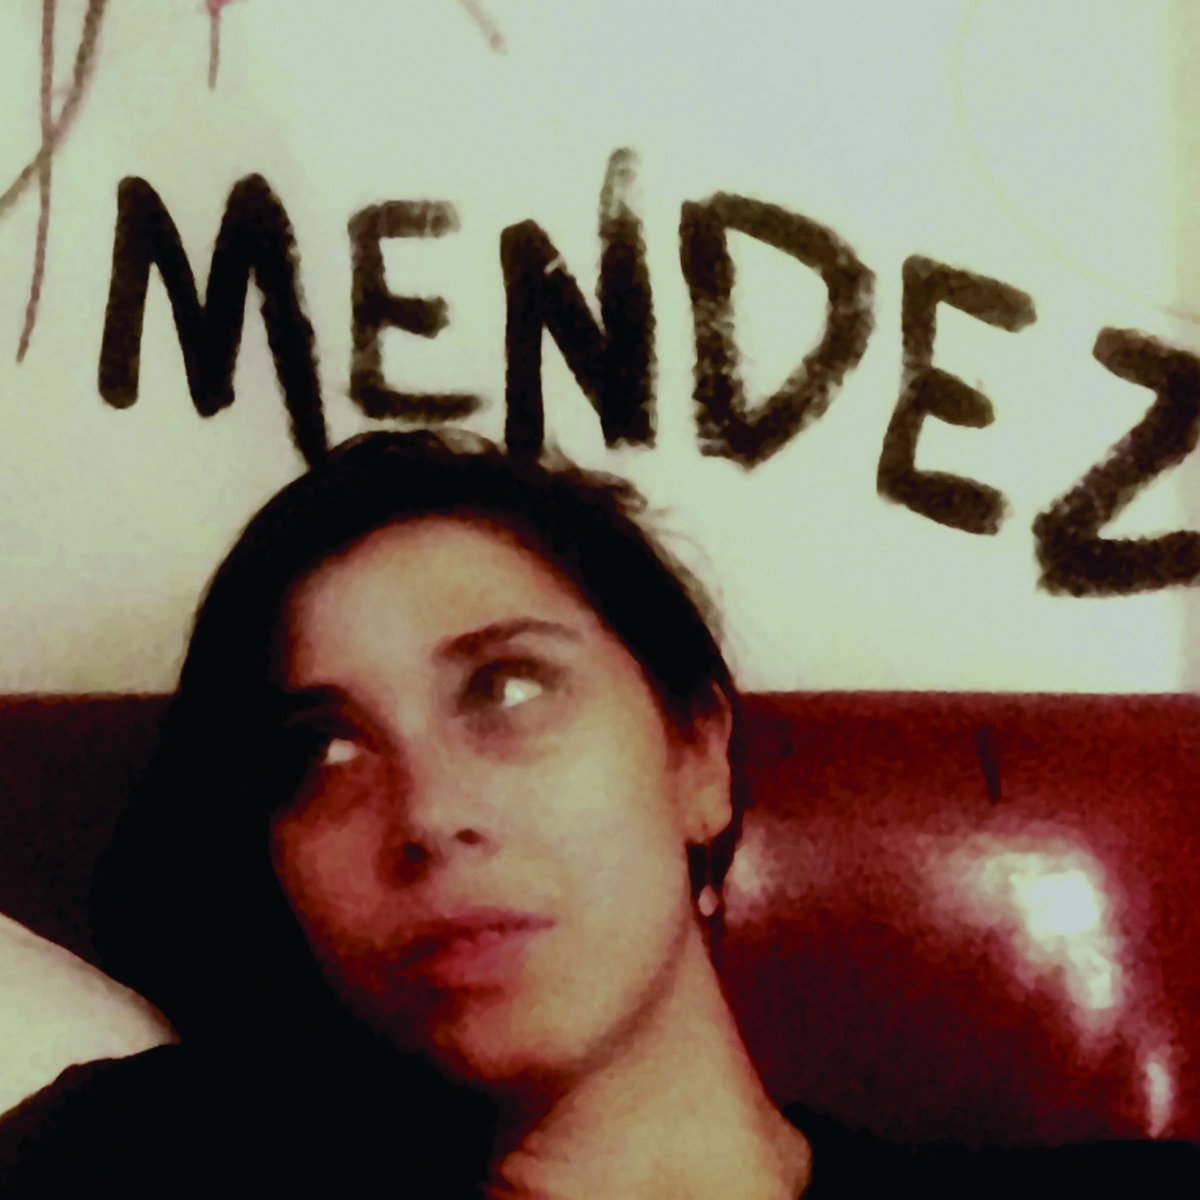 Mendez -/